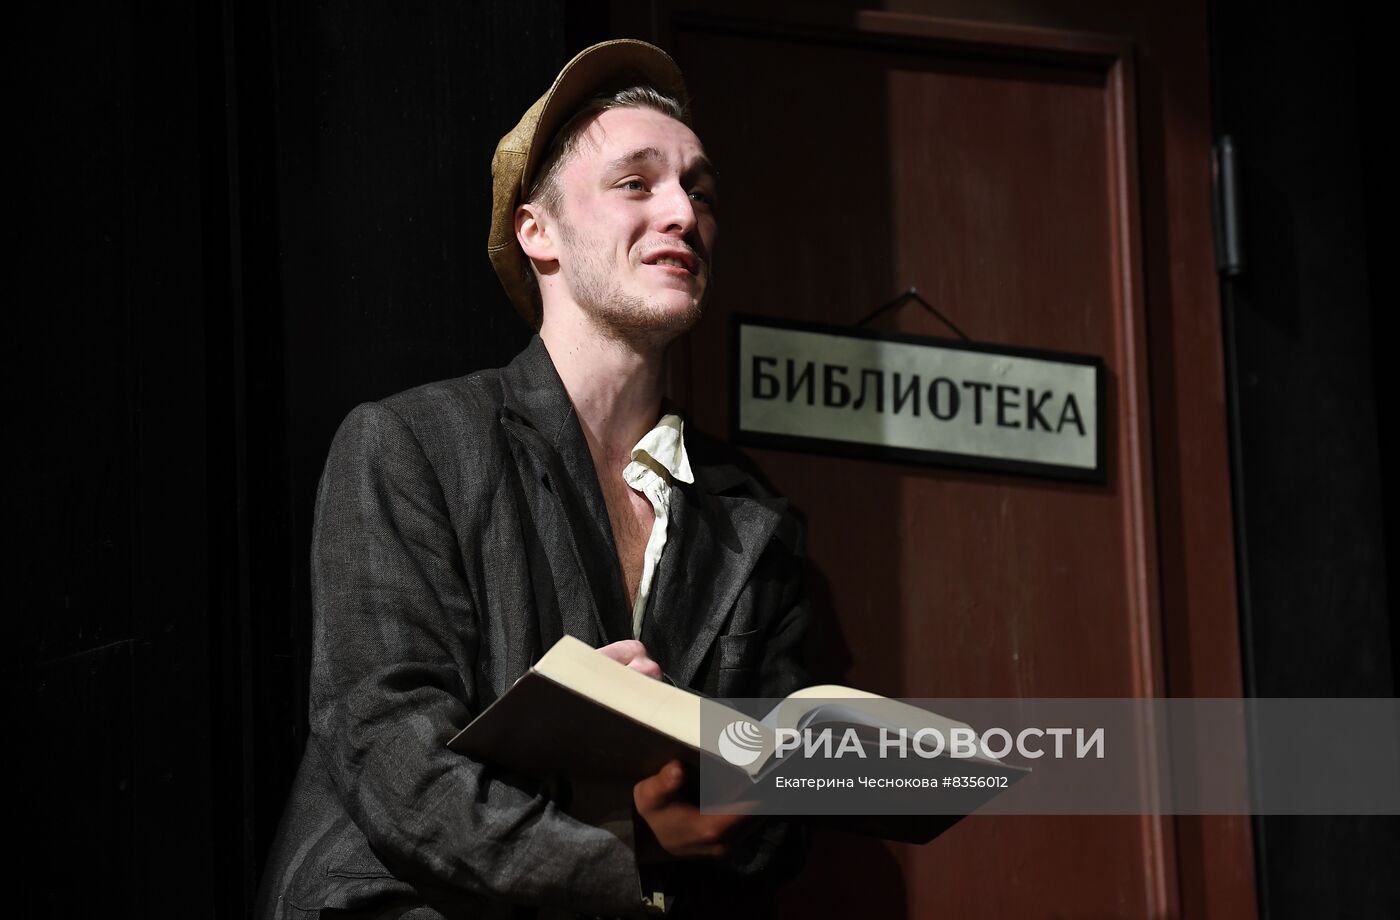 Спектакль "Охота жить" в театре Табакова